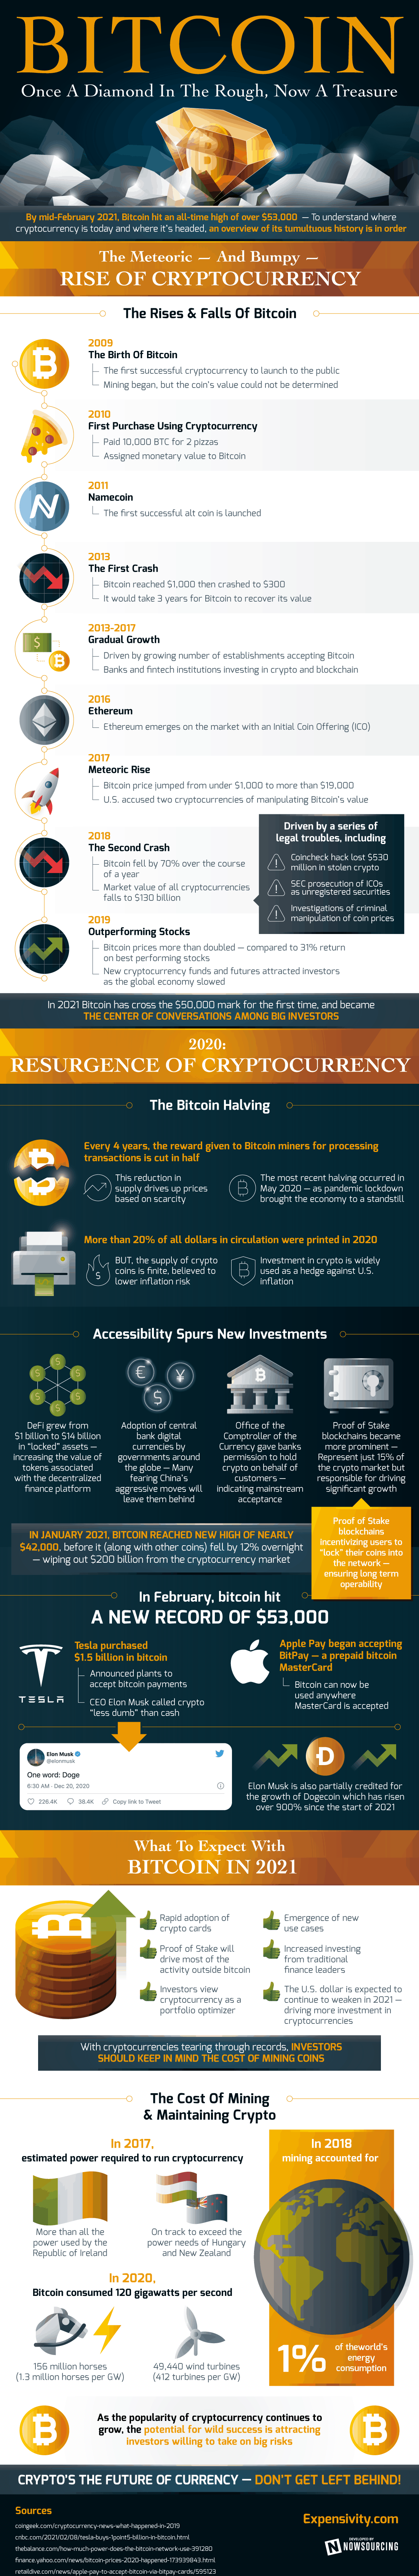 describes the history of Bitcoin